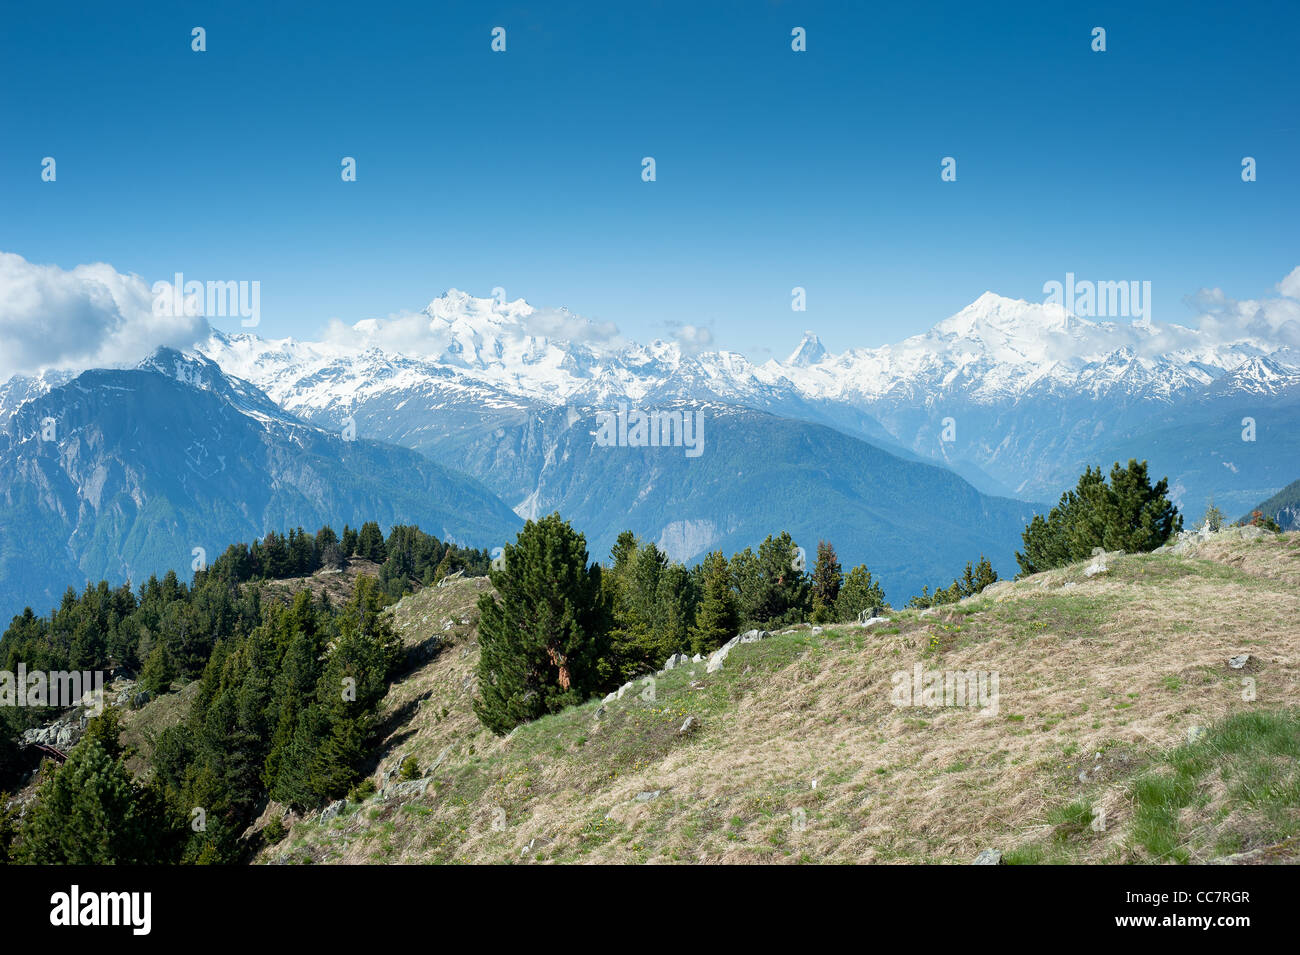 Mischabel, le Cervin et le Weisshorn des pics de montagne, vue d'Reiderhorn, Valais, Suisse Banque D'Images